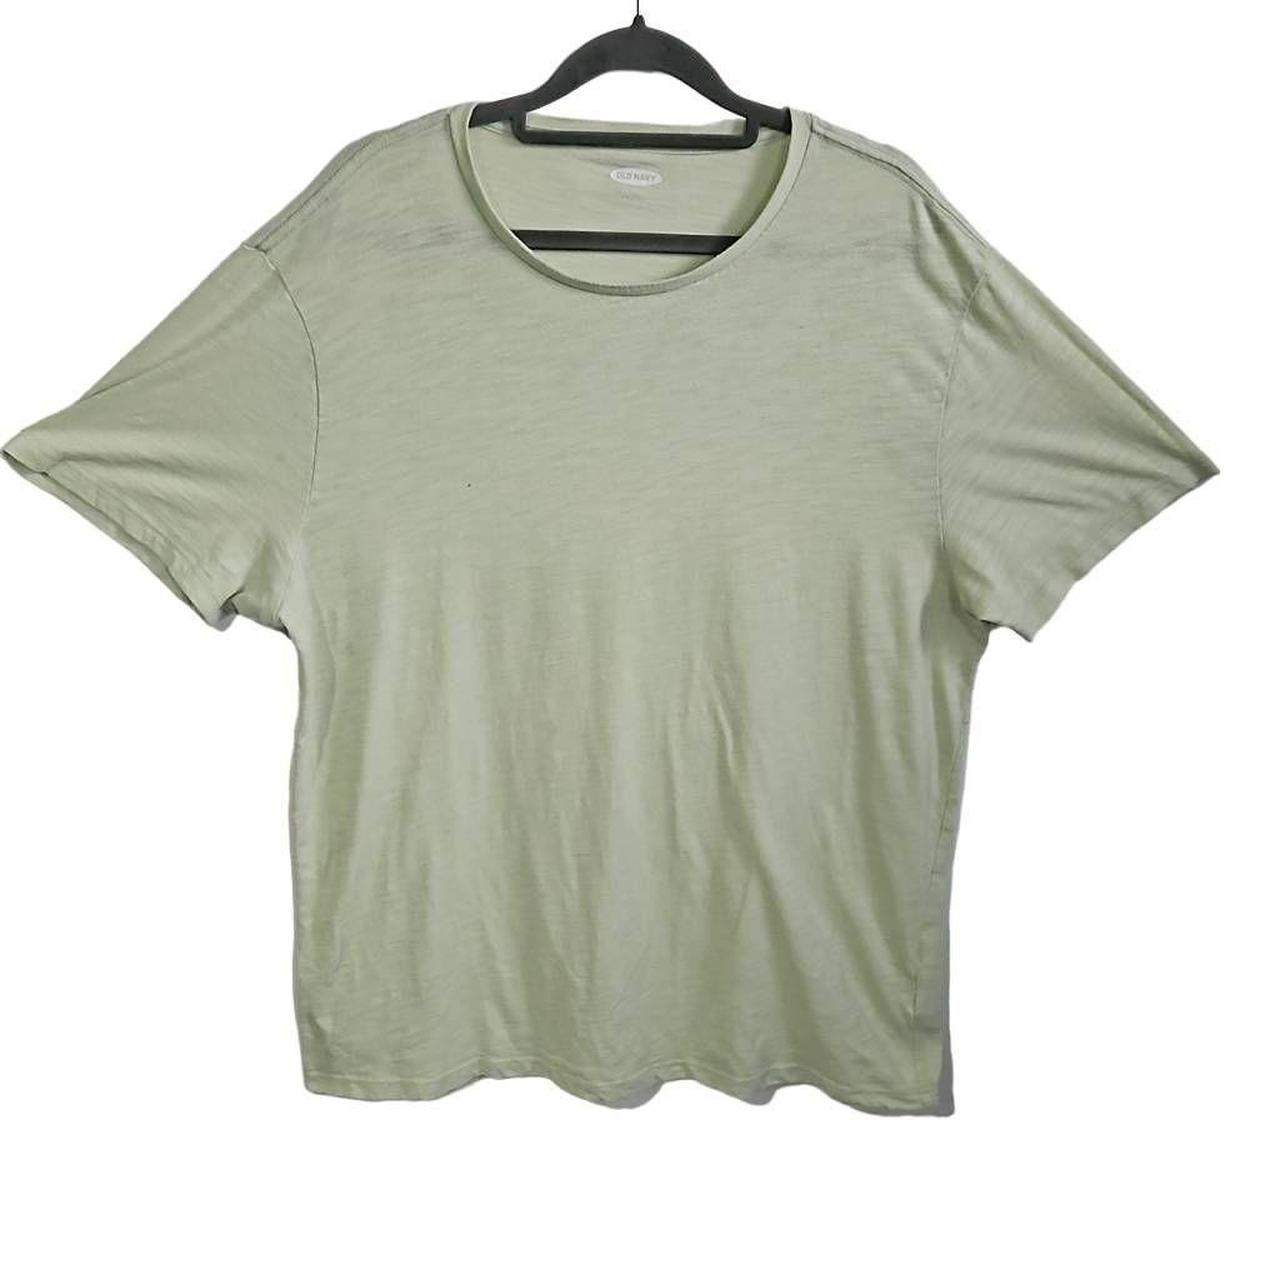 Old Navy Men's T-Shirt - Green - XL